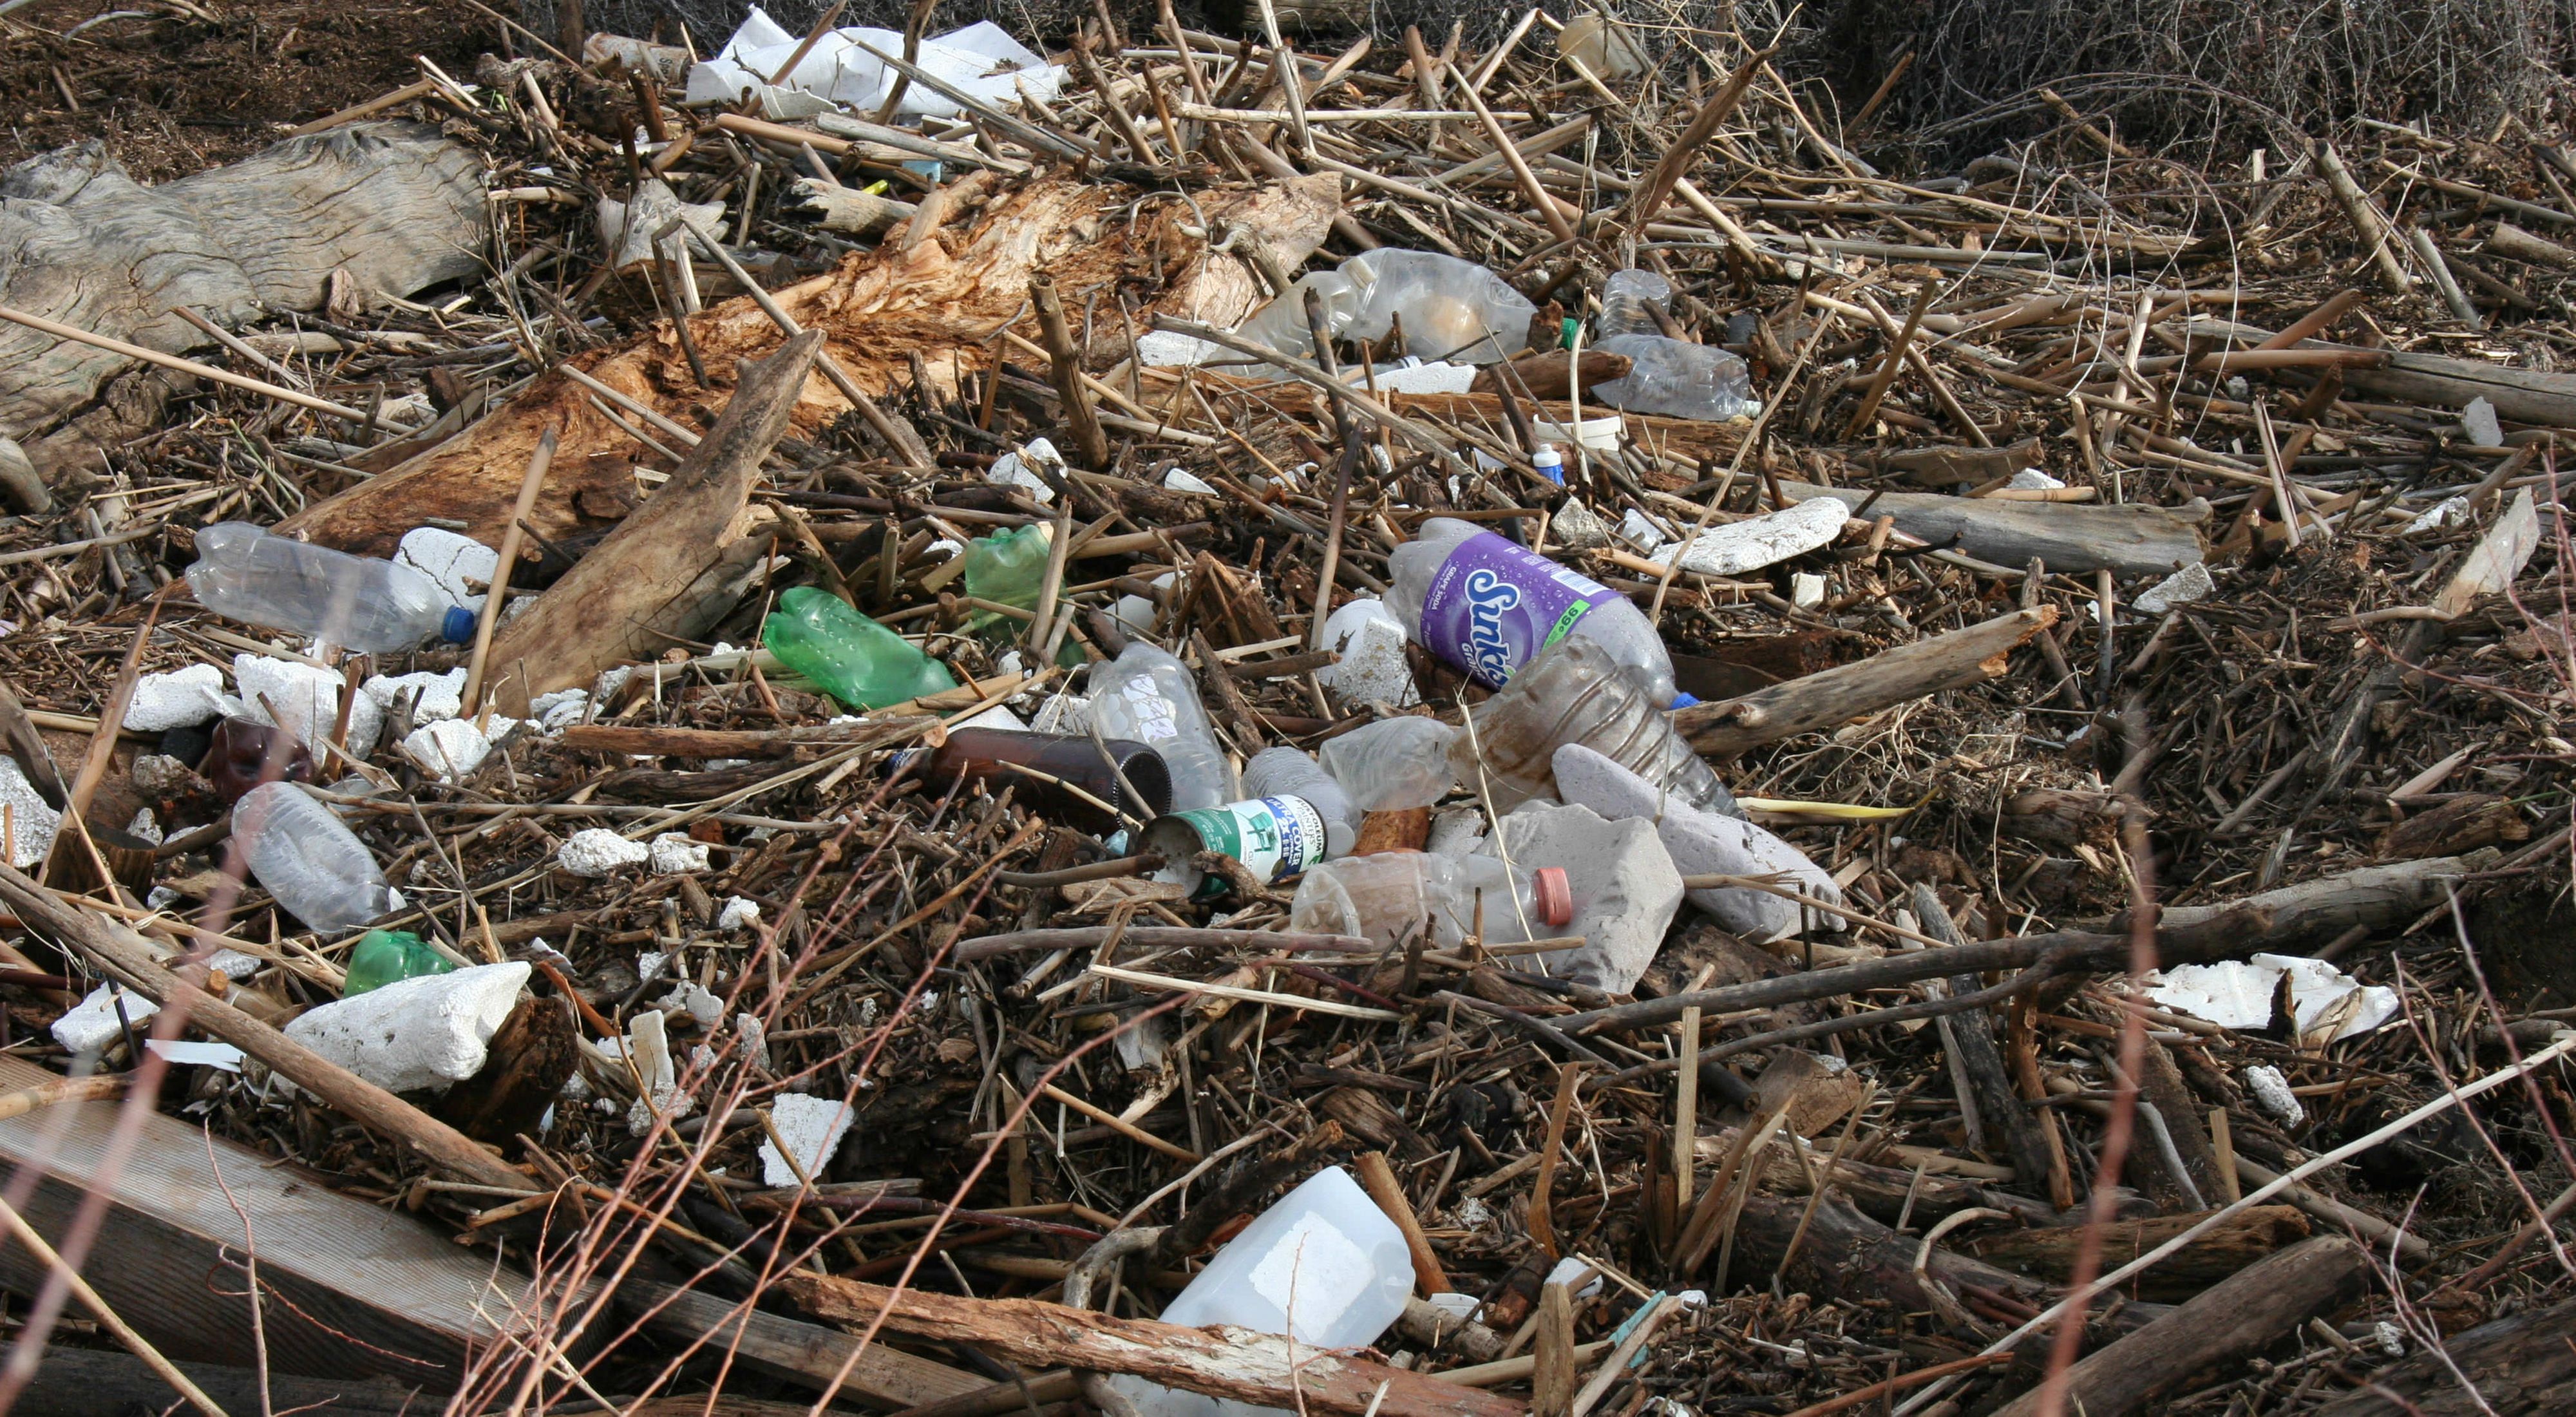 Primer plano de una pila de basura. Latas, botellas de vidrio, envases plásticos de leche y botellas de refrescos esparcidos entre una pila gruesa de ramas, troncos y madera rota.